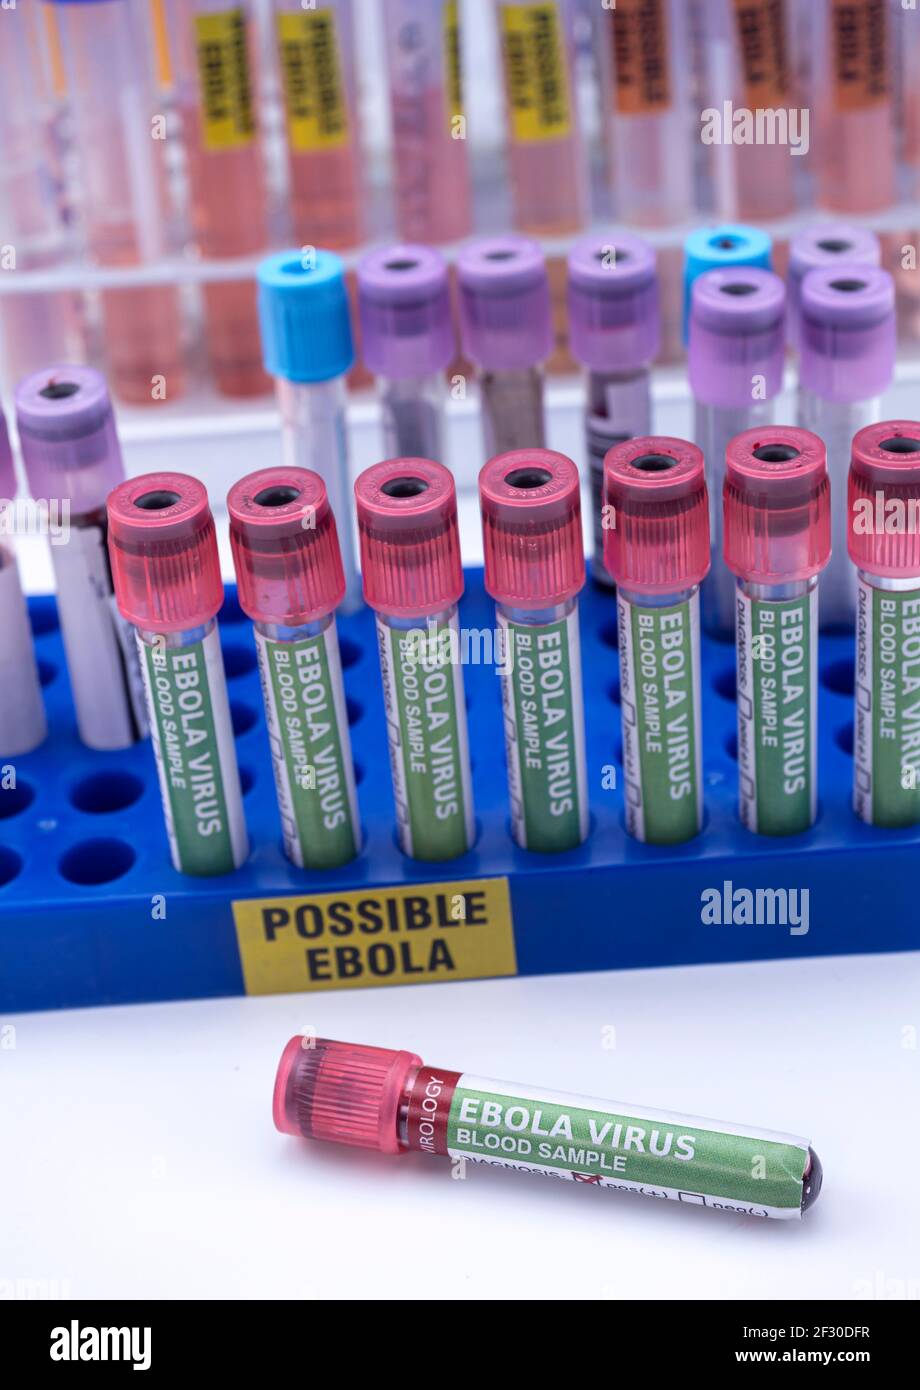 Fiale campione di sangue da possibili pazienti Ebola infettati con nuovo ceppo Zaire di Ebola, immagine concettuale Foto Stock